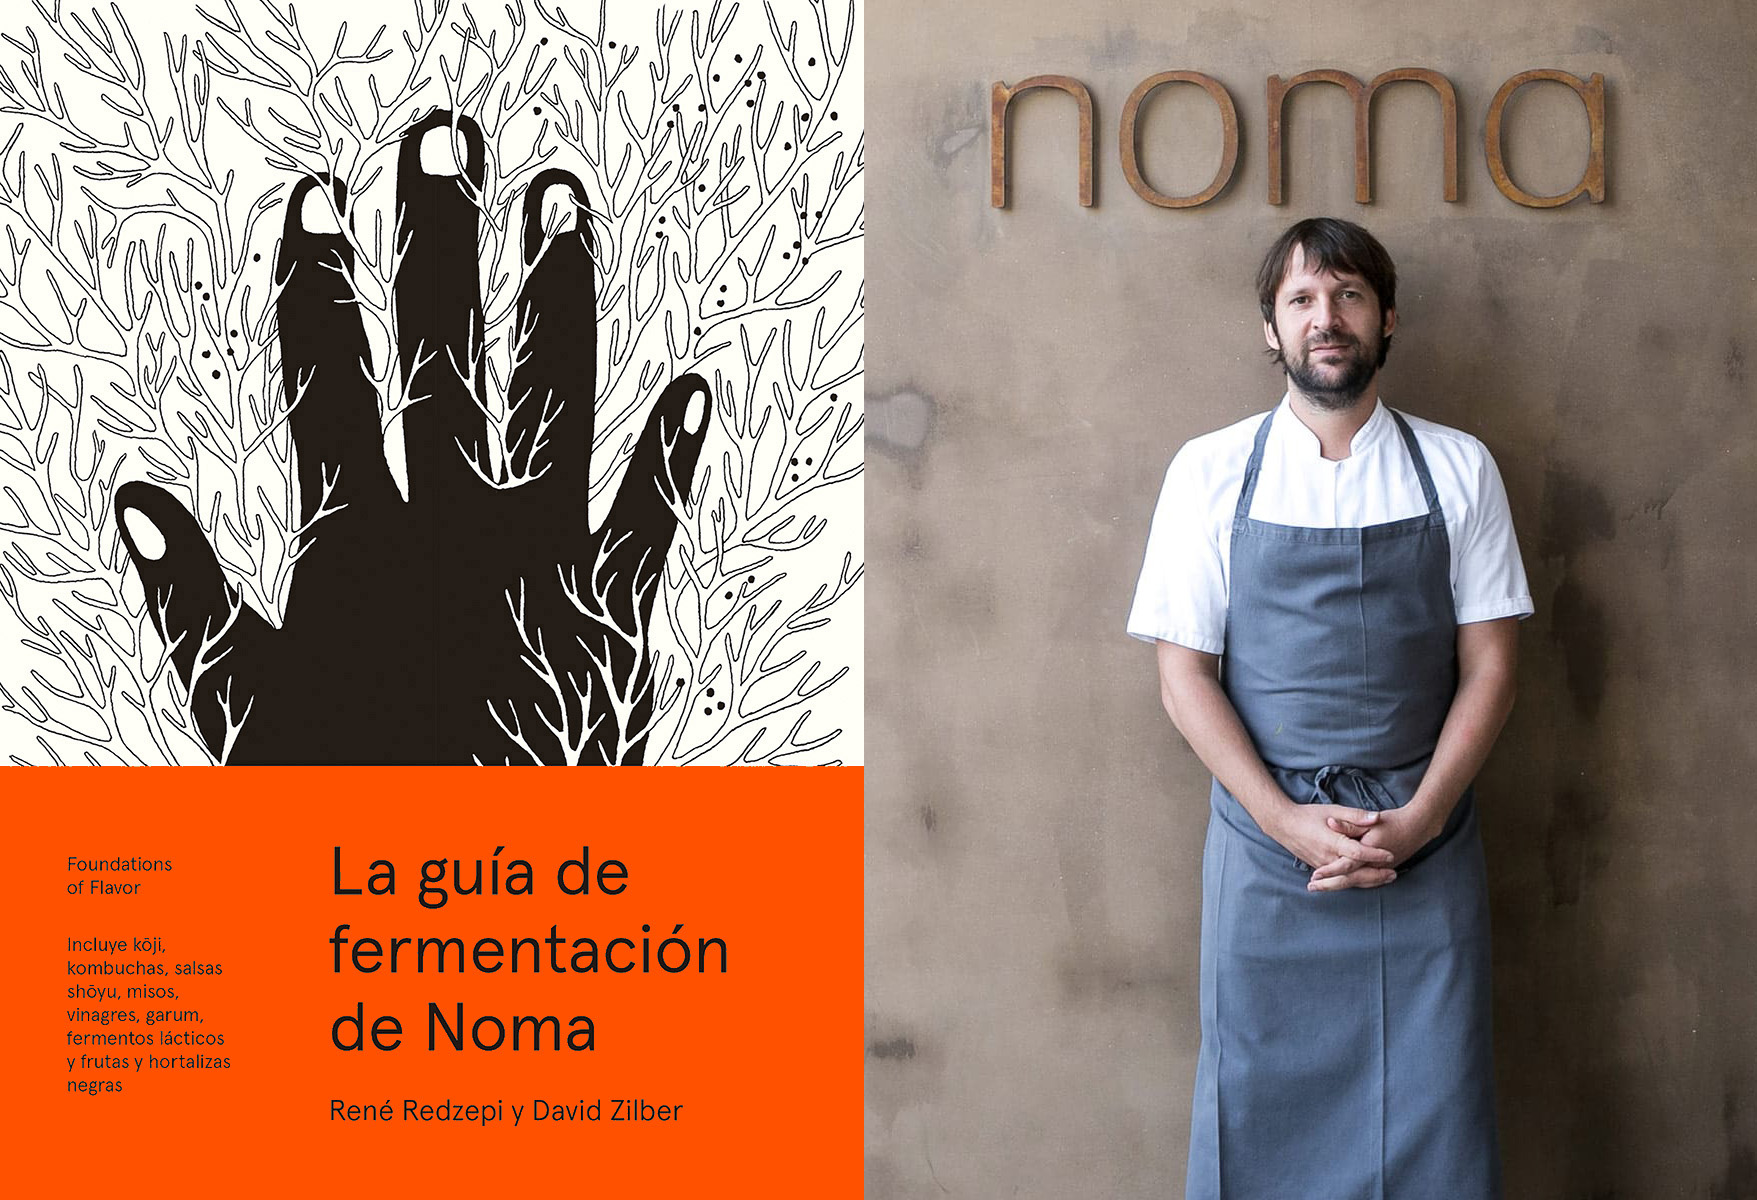 René Redzepi, autor de "La guía de fermentación de Noma", elegido Cocinero del Año en Europa en Madrid Fusión.